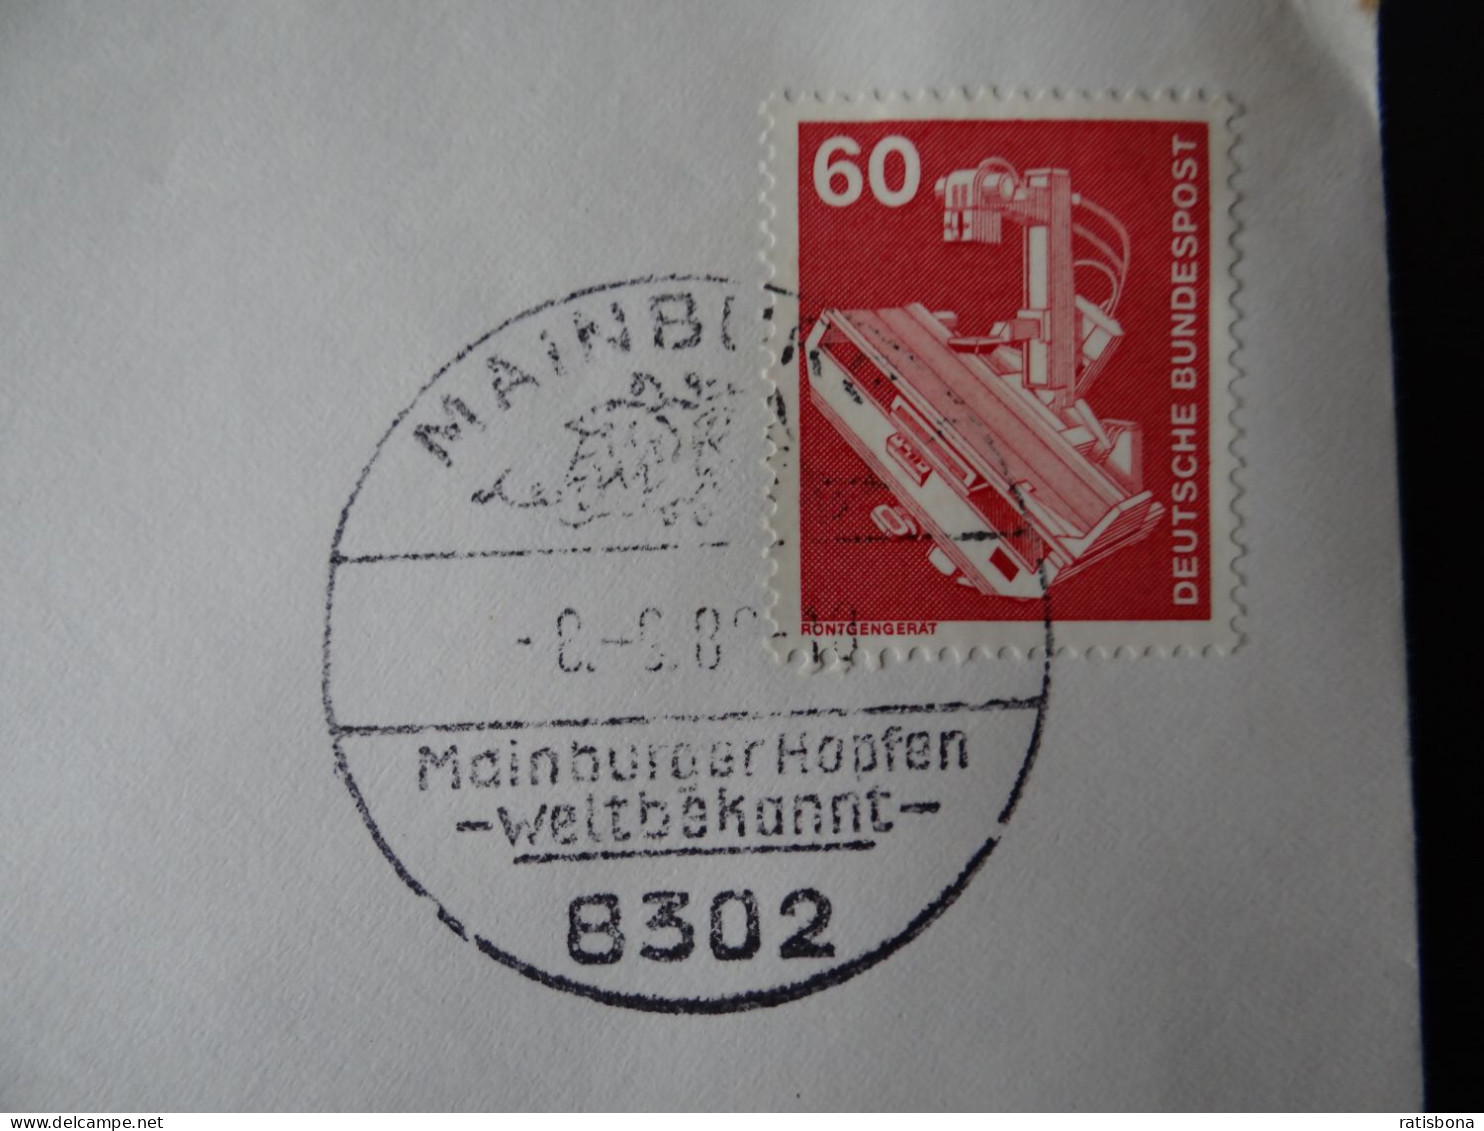 8302 Mainburg - MainburgerHopfen Weltbekannt - Sonderstempel Rund 1980 - Machines à Affranchir (EMA)